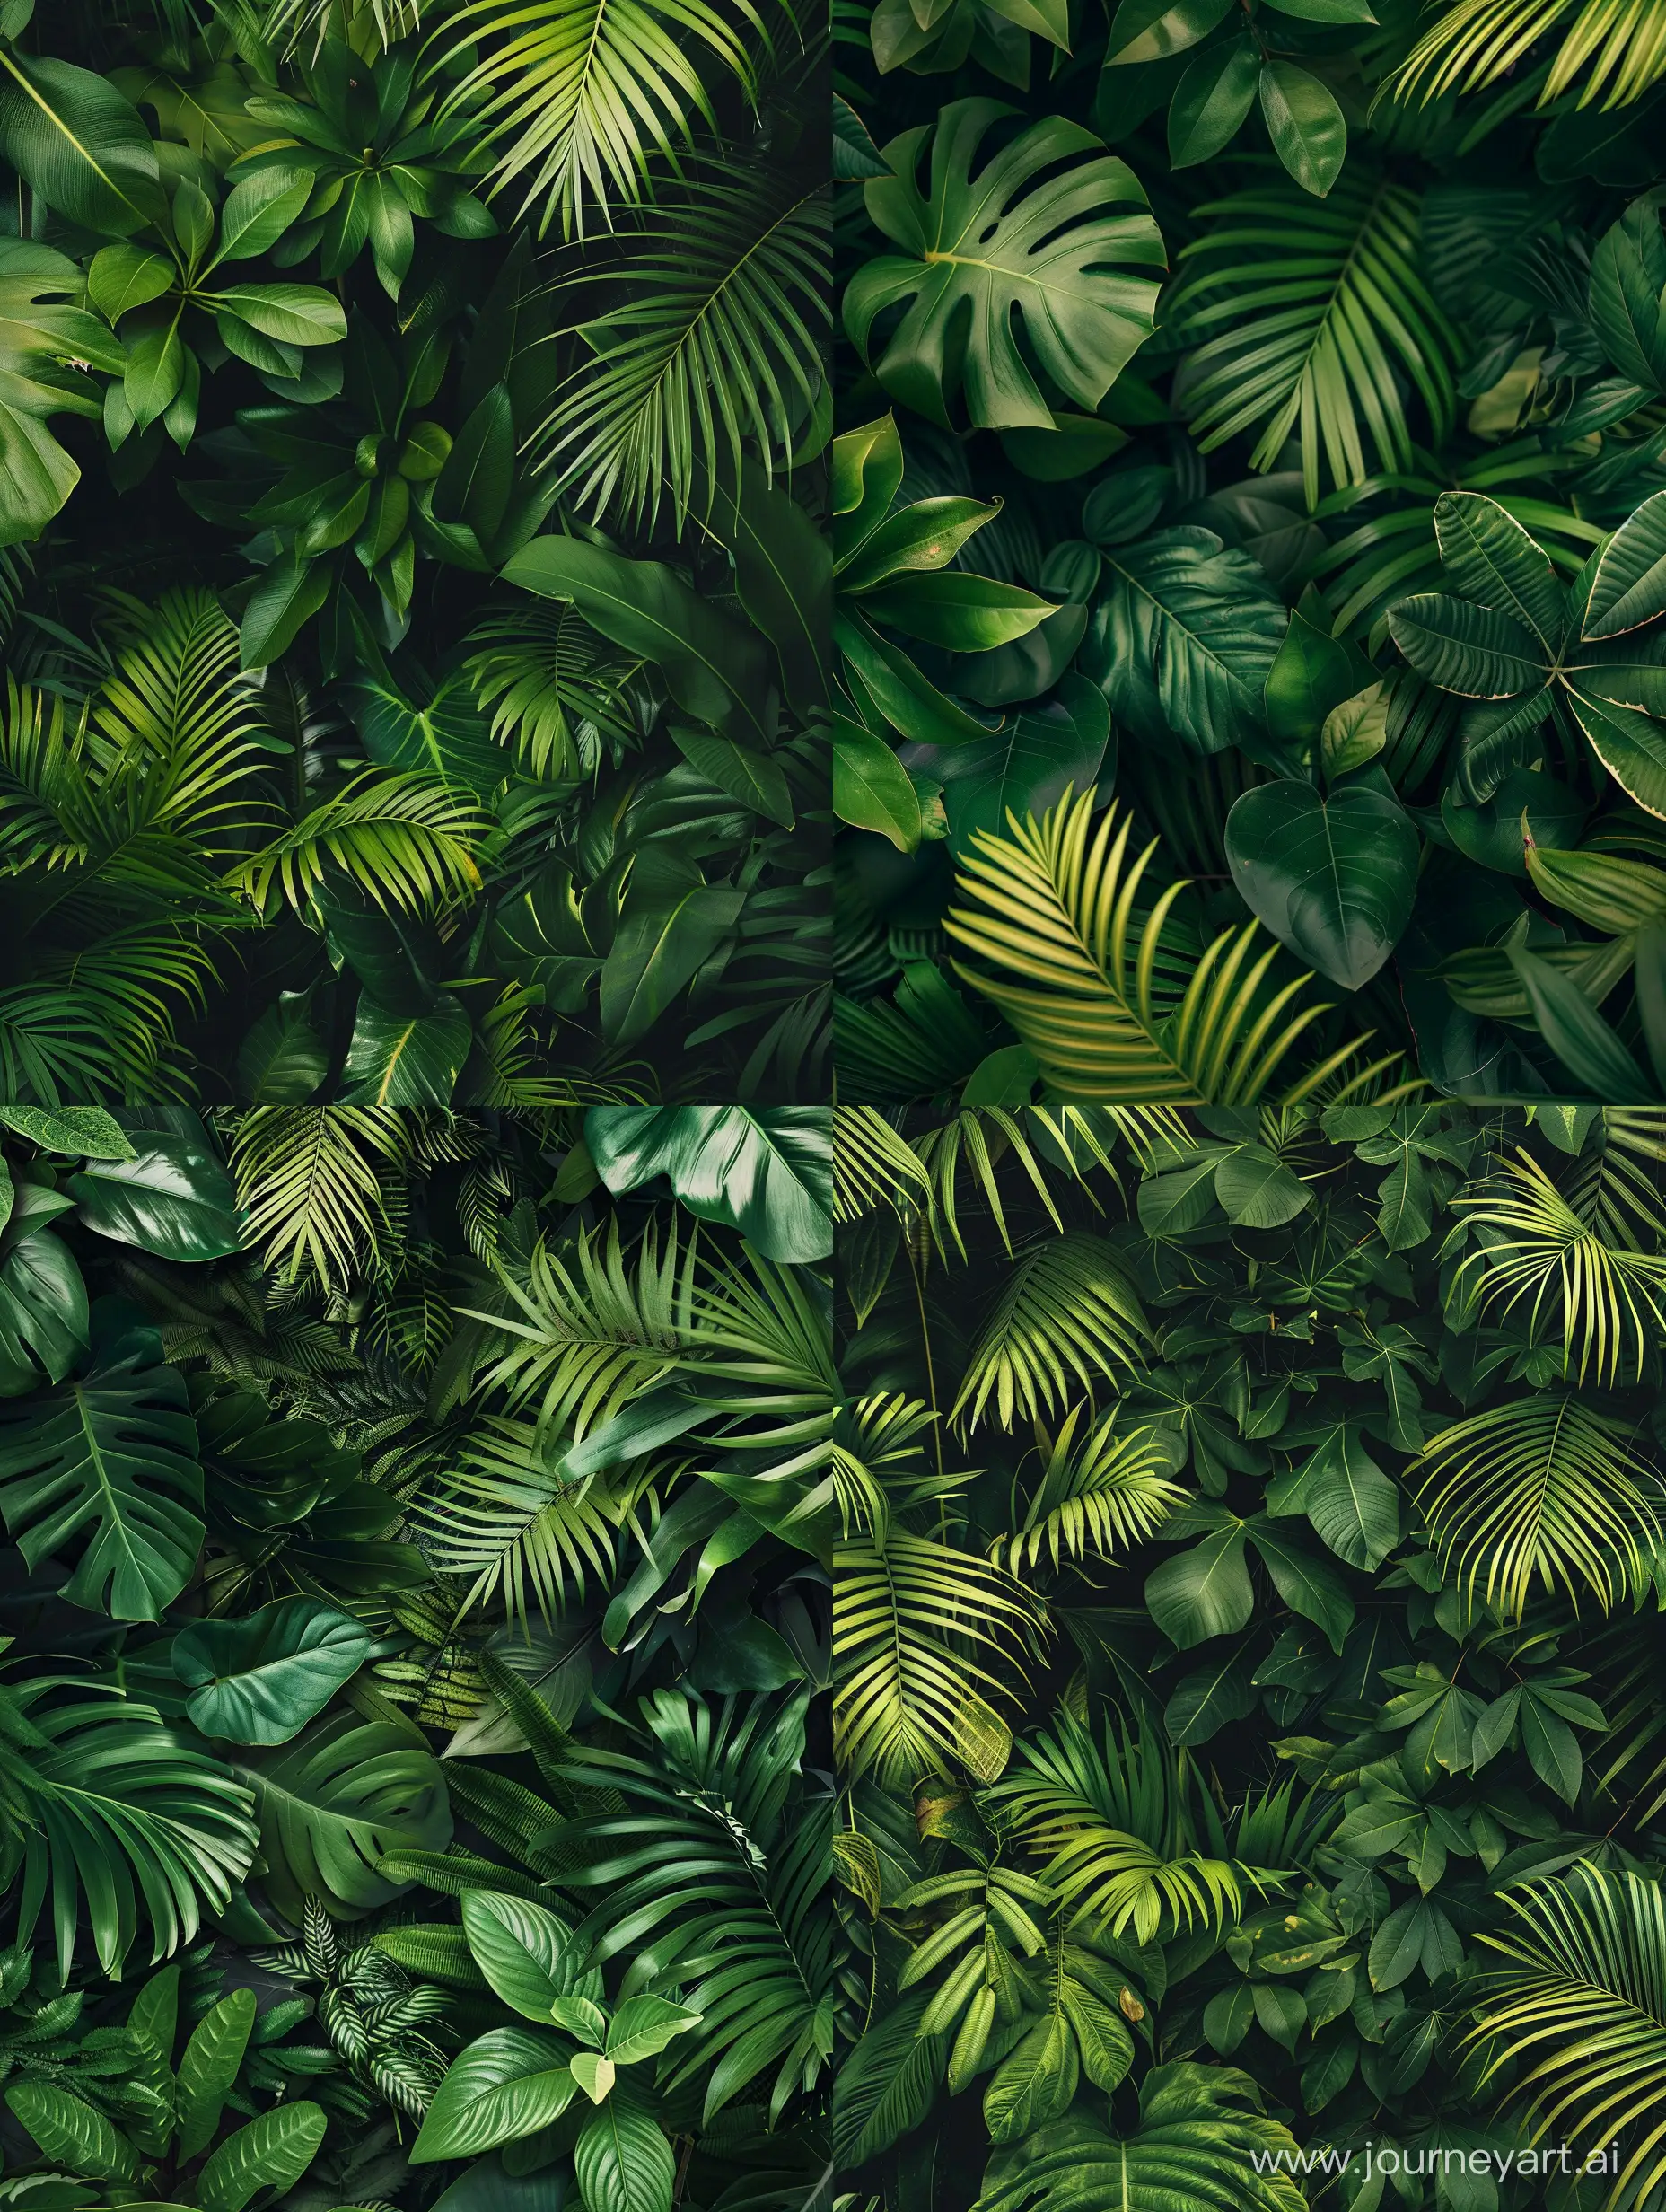 Haz una imagen para fondo de pantalla, que se vea como una fotografía donde sean puras hojas verdes de plantas o árboles de las que hay en selvas.

